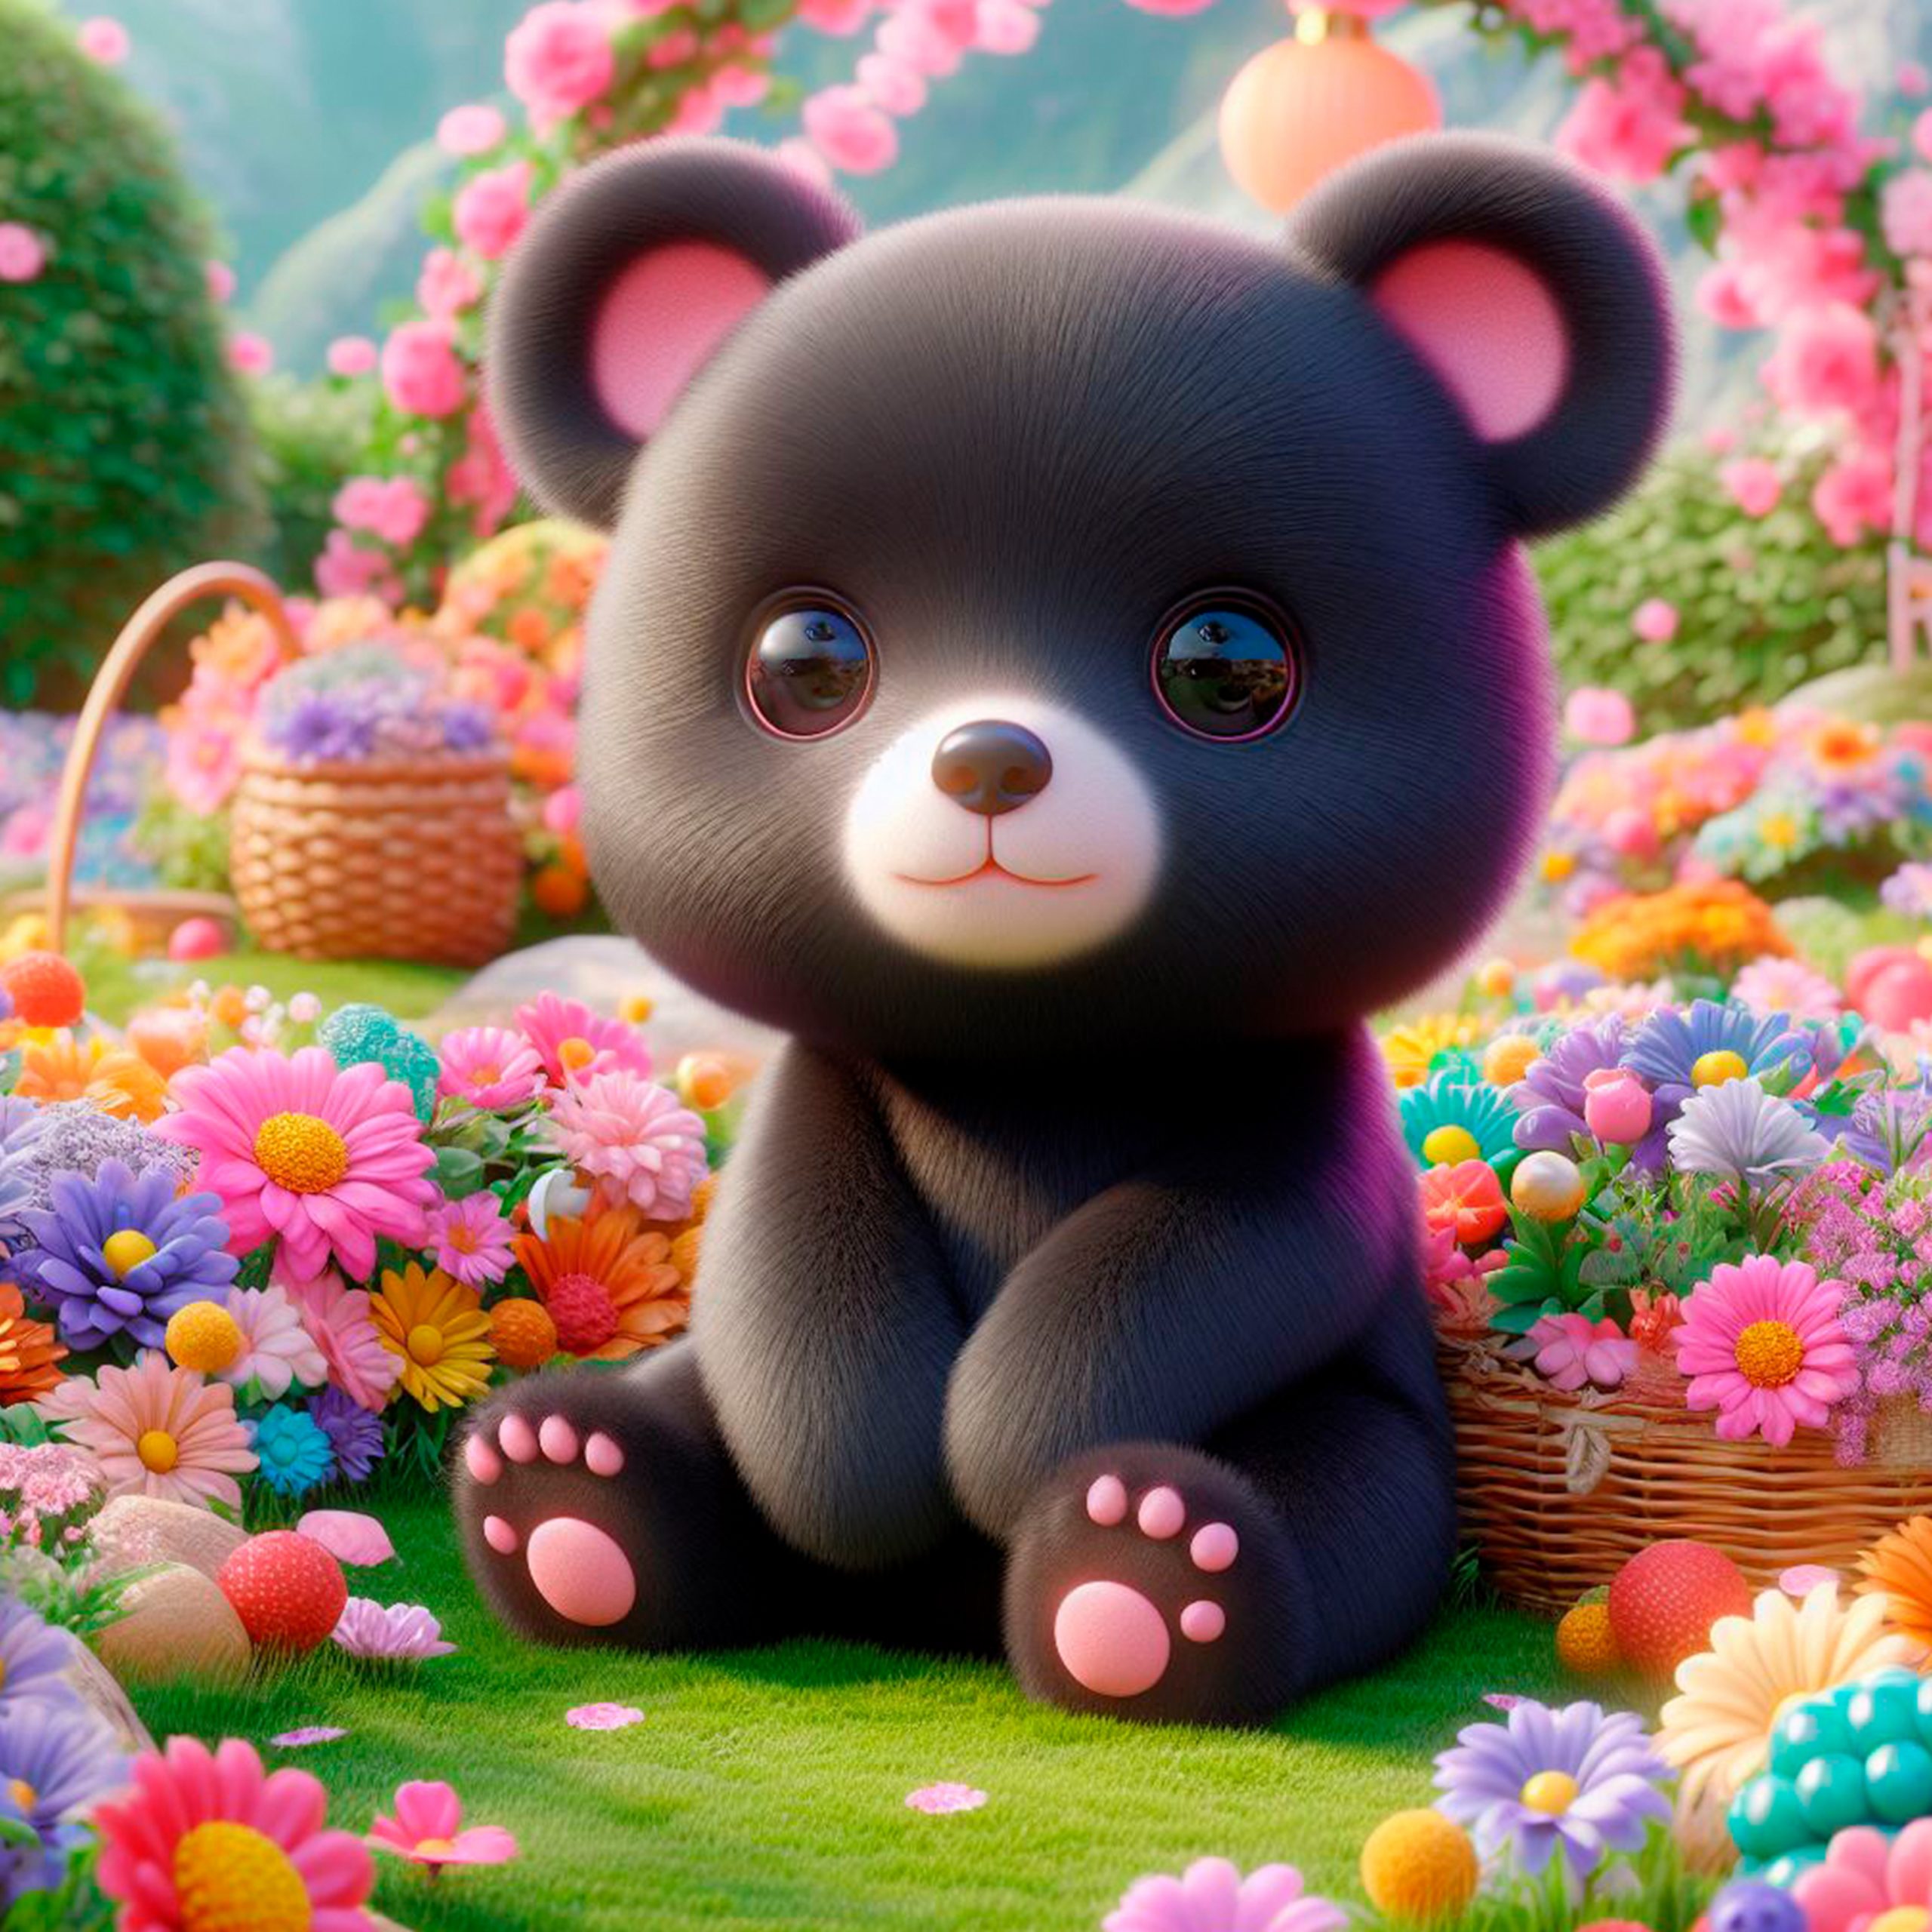 Oso bebé color negro sentado en un campo de flores de muchos colores